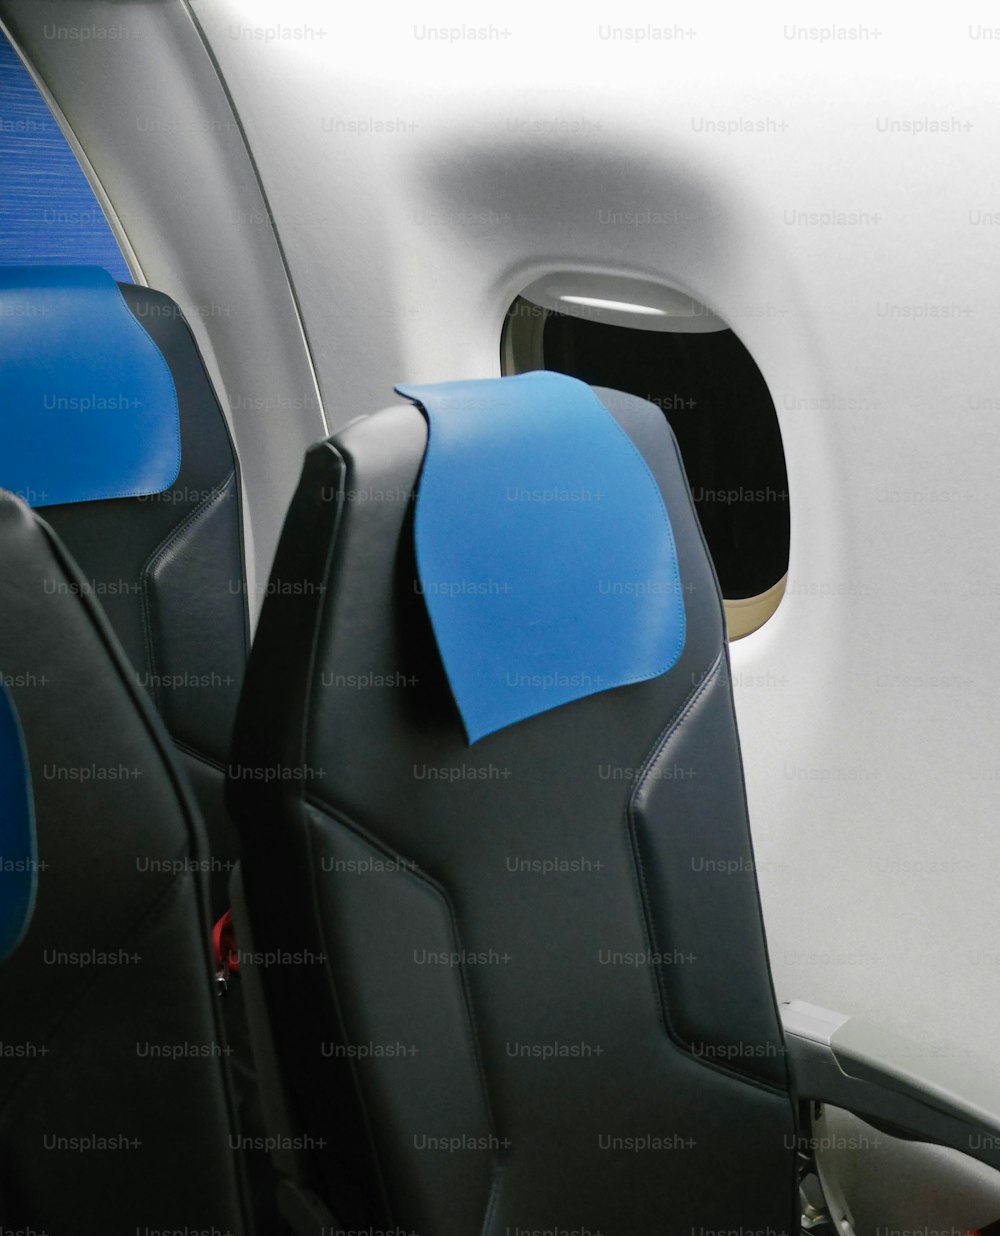 Die Sitze im Flugzeug sind blau und schwarz